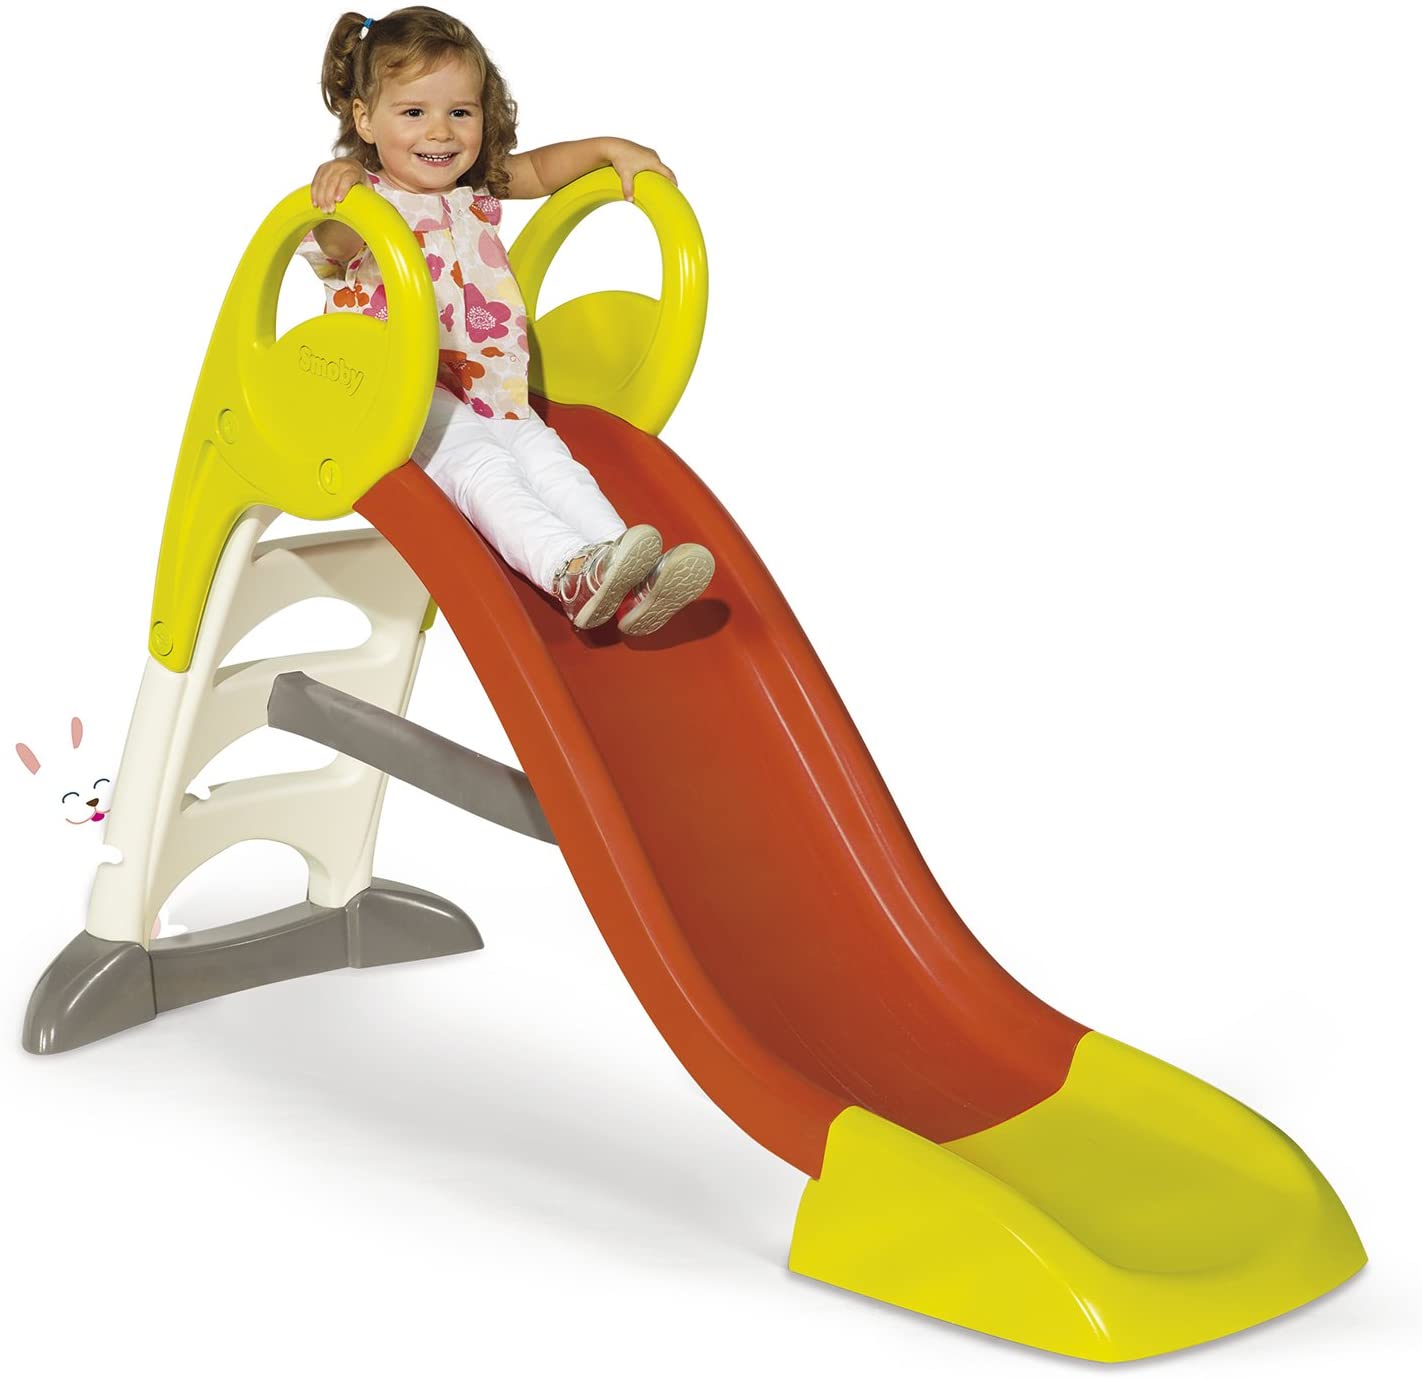 Le toboggan pour enfant Smoby KS dispose de 1,5 mètres de glisse.